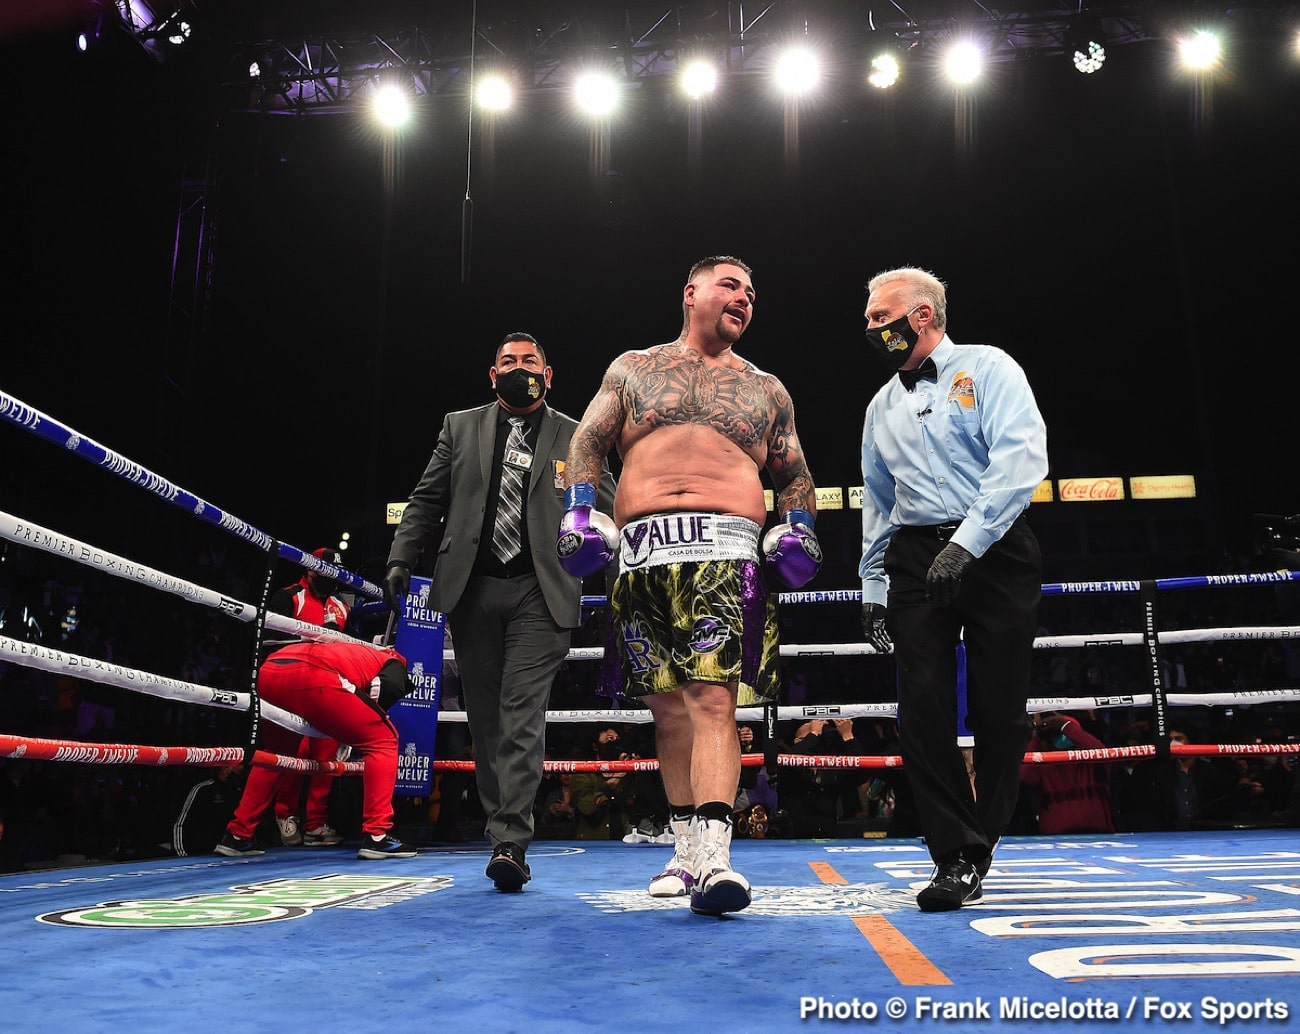 Andy Ruiz Jr. boxing photo and news image